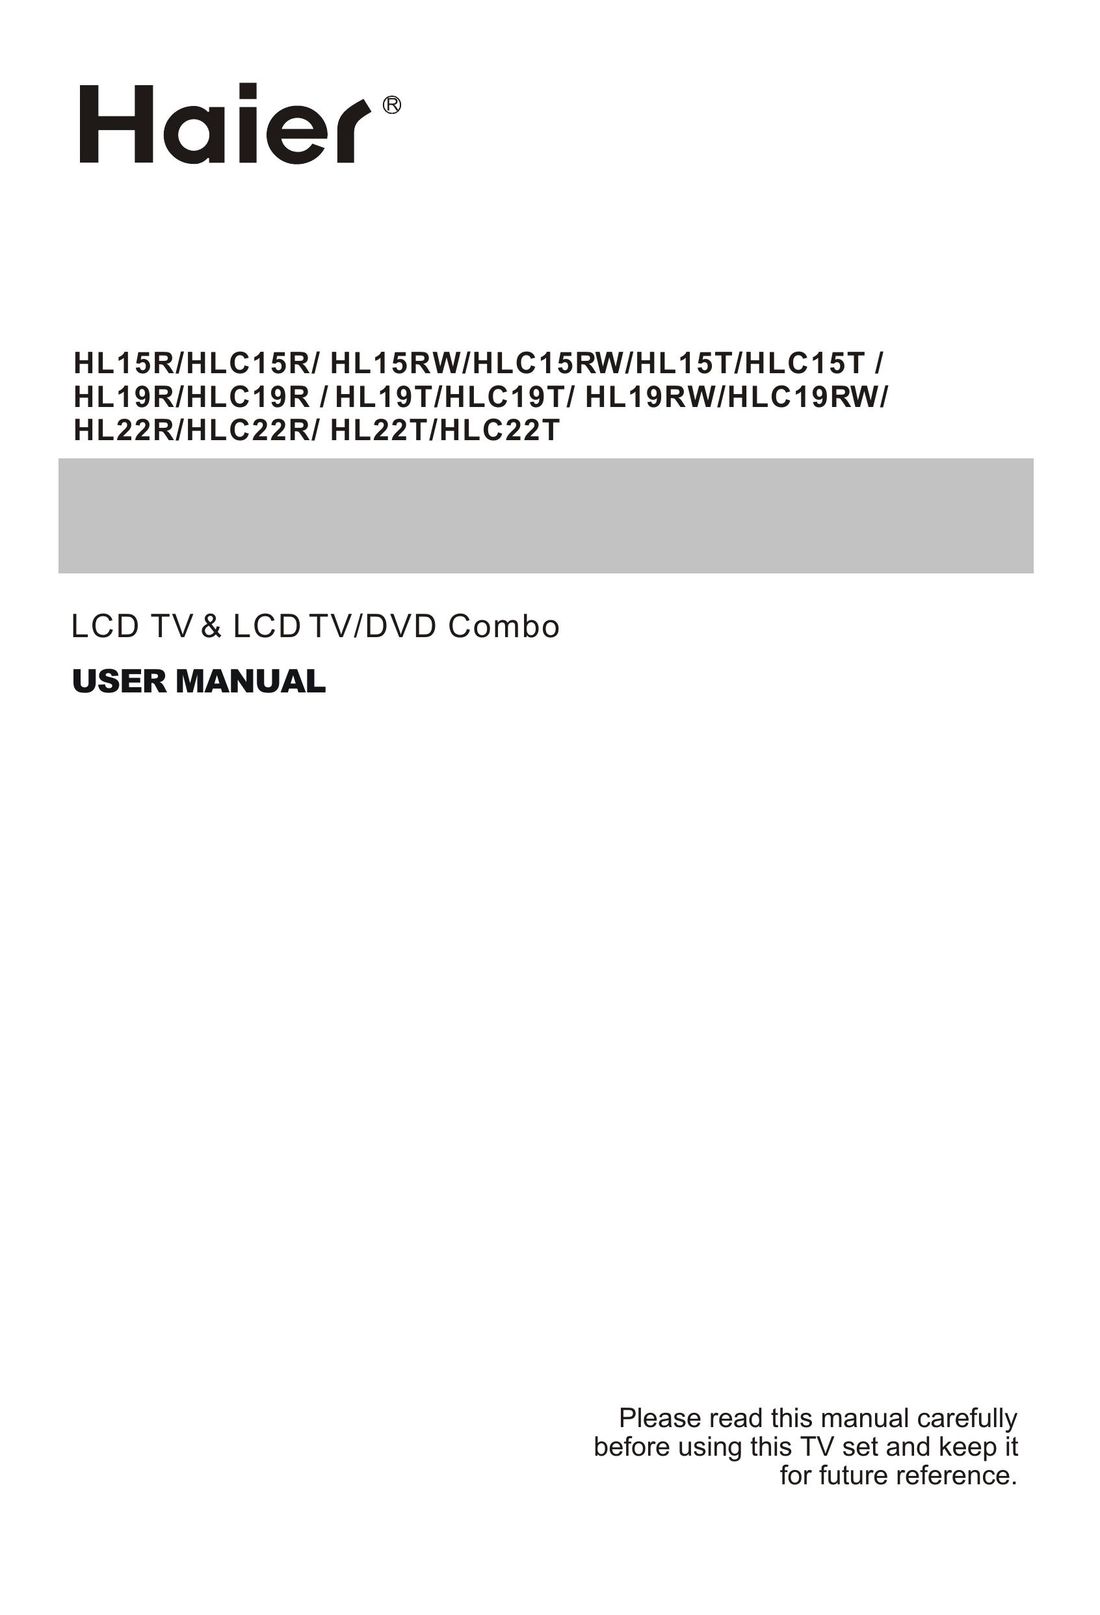 Haier HLC22R TV DVD Combo User Manual